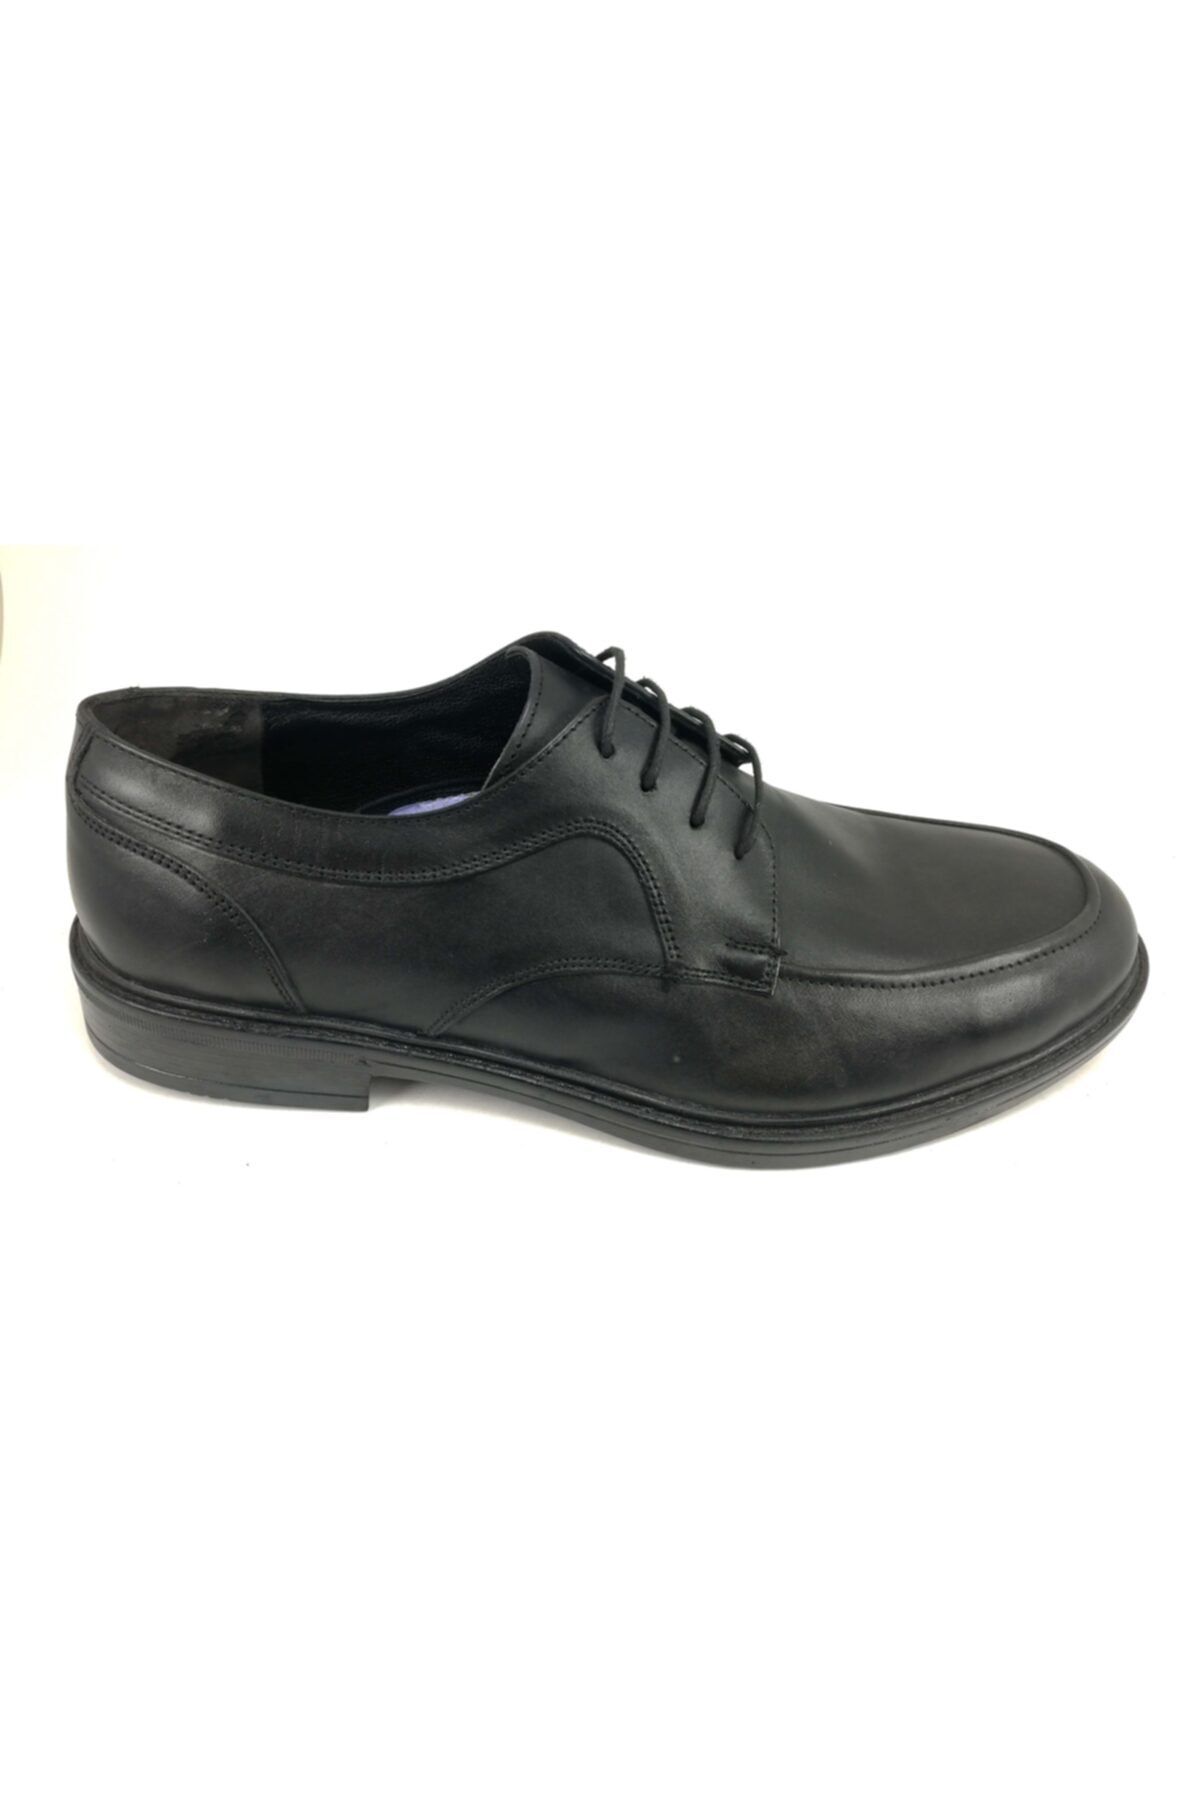 Alpino Erkek Siyah Bağlı Klasik Deri Ayakkabı